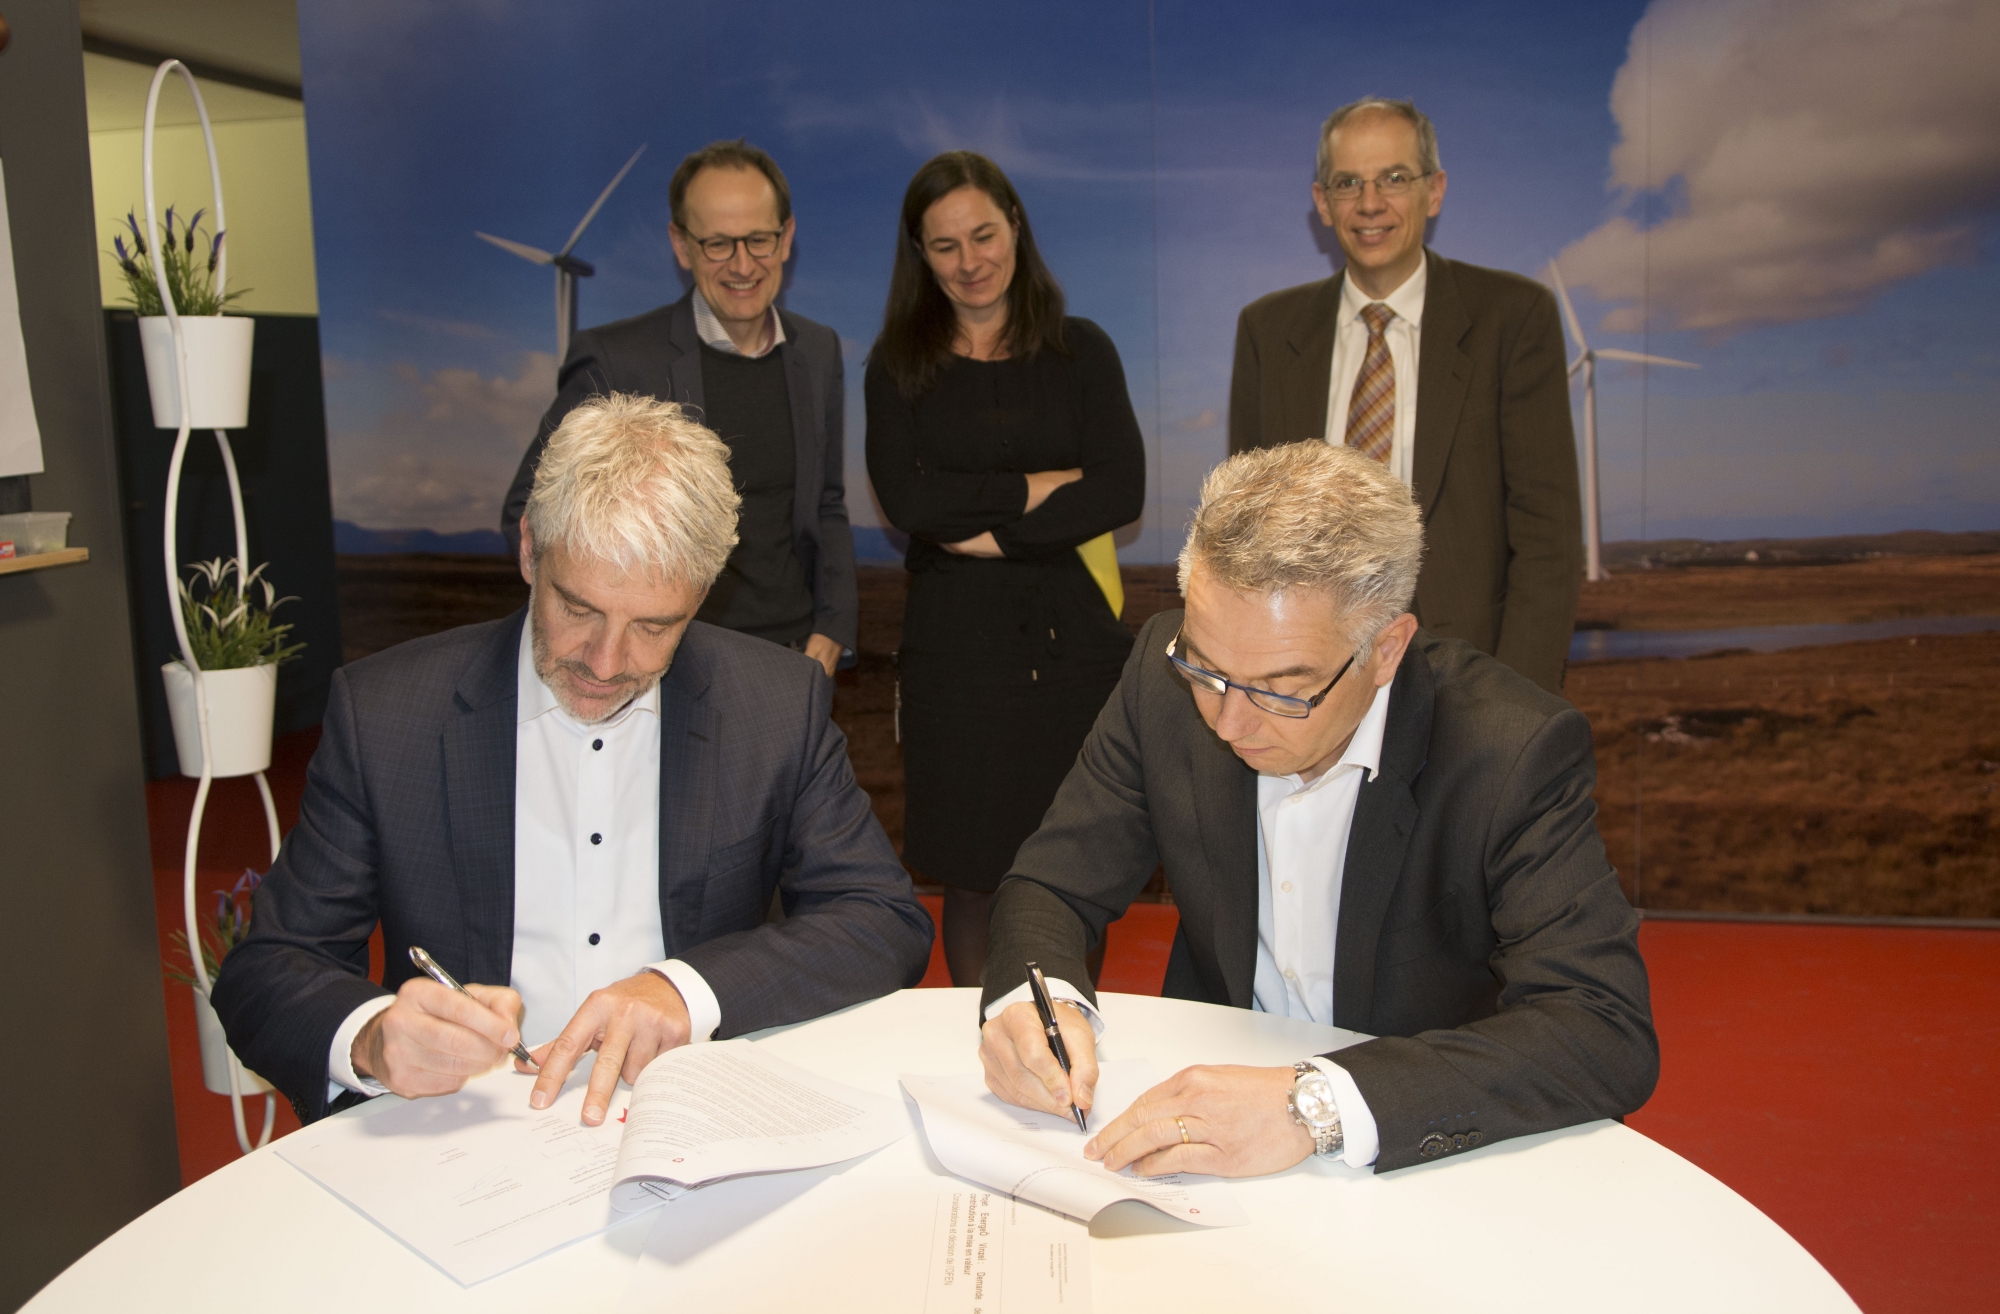 Le président d'EnergieÔ Thierry Magnenat et le directeur Daniel Clément signent le contrat de subvention de l'Office fédéral de l'énergie.